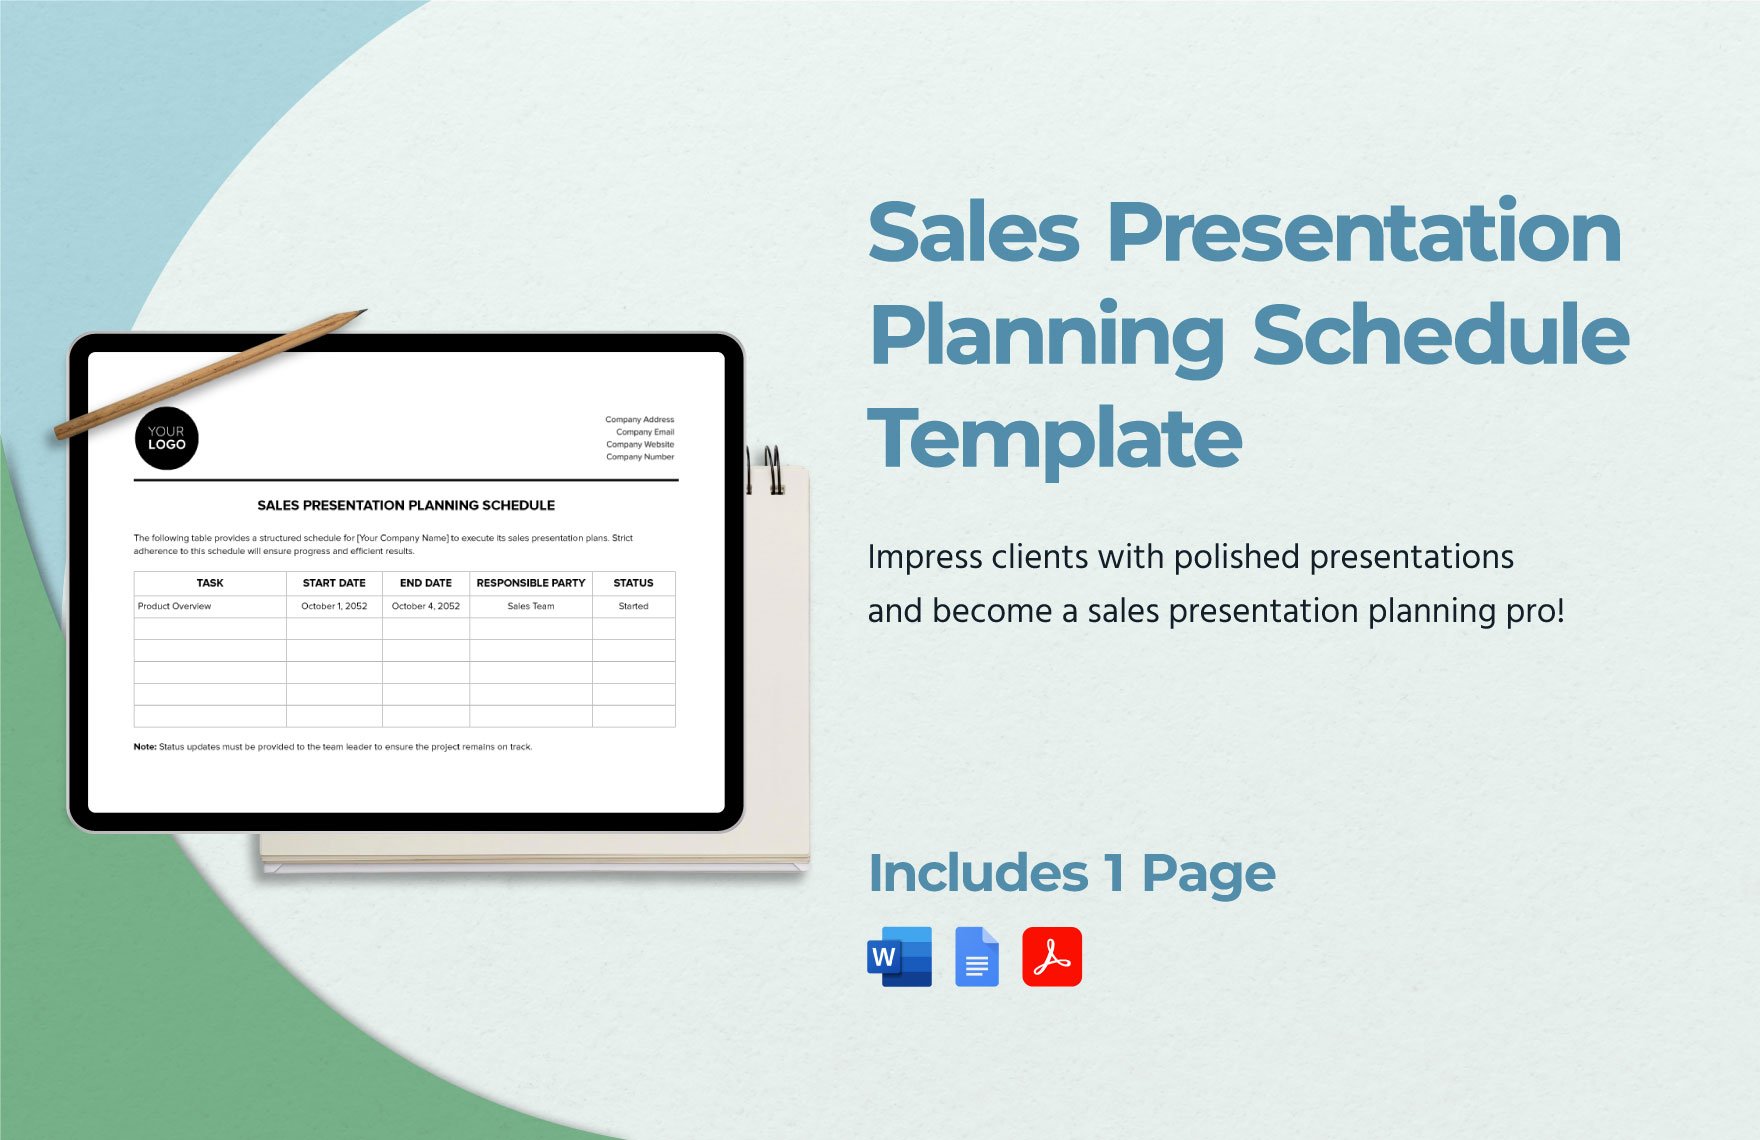 Sales Presentation Planning Schedule Template